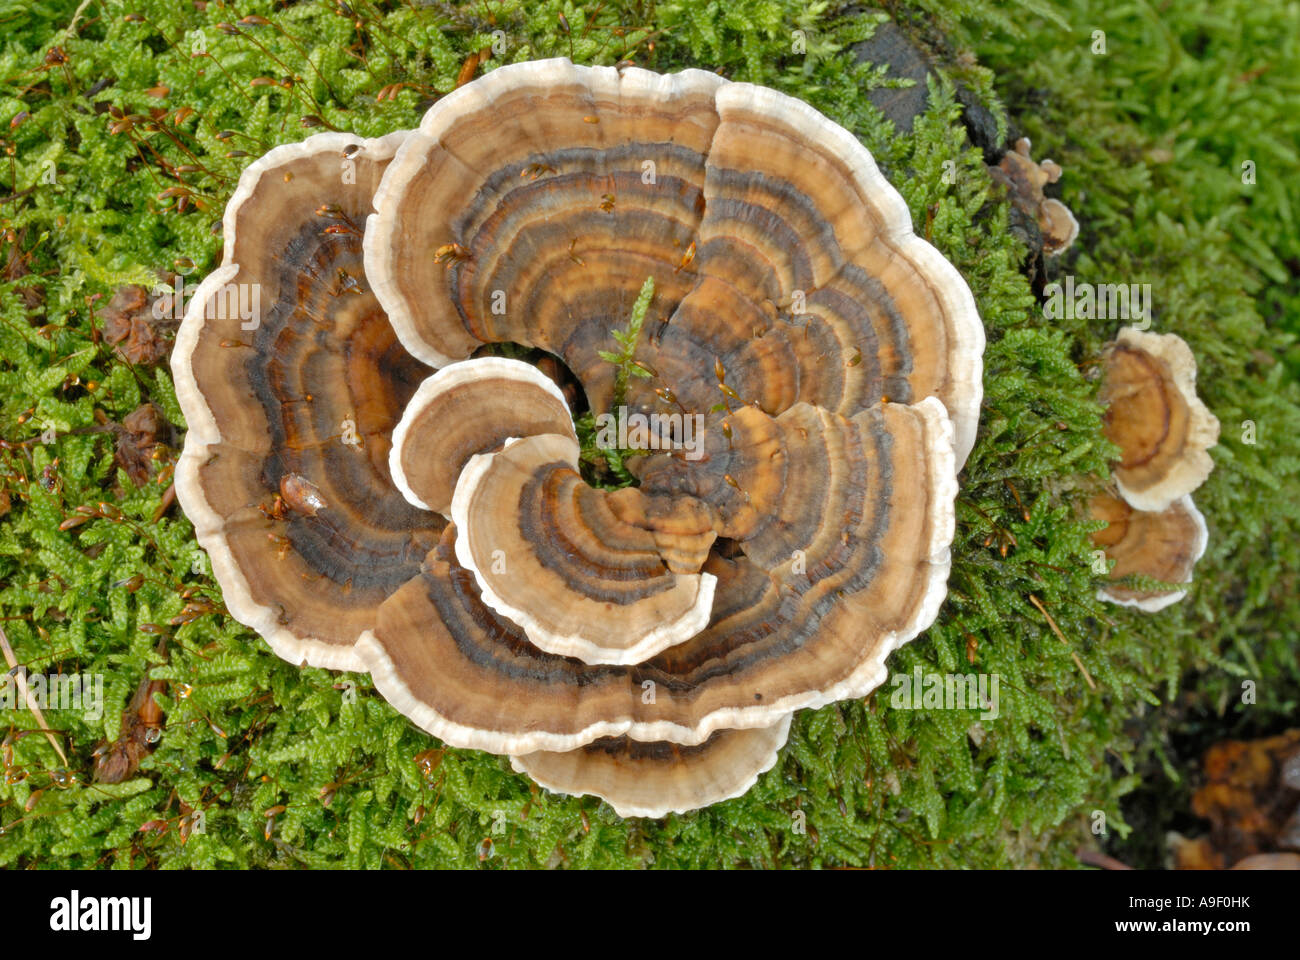 Queue de la Turquie, de champignons polypores multicolores (Trametes versicolor, Coriolus versicolor) sur bois moussus Banque D'Images